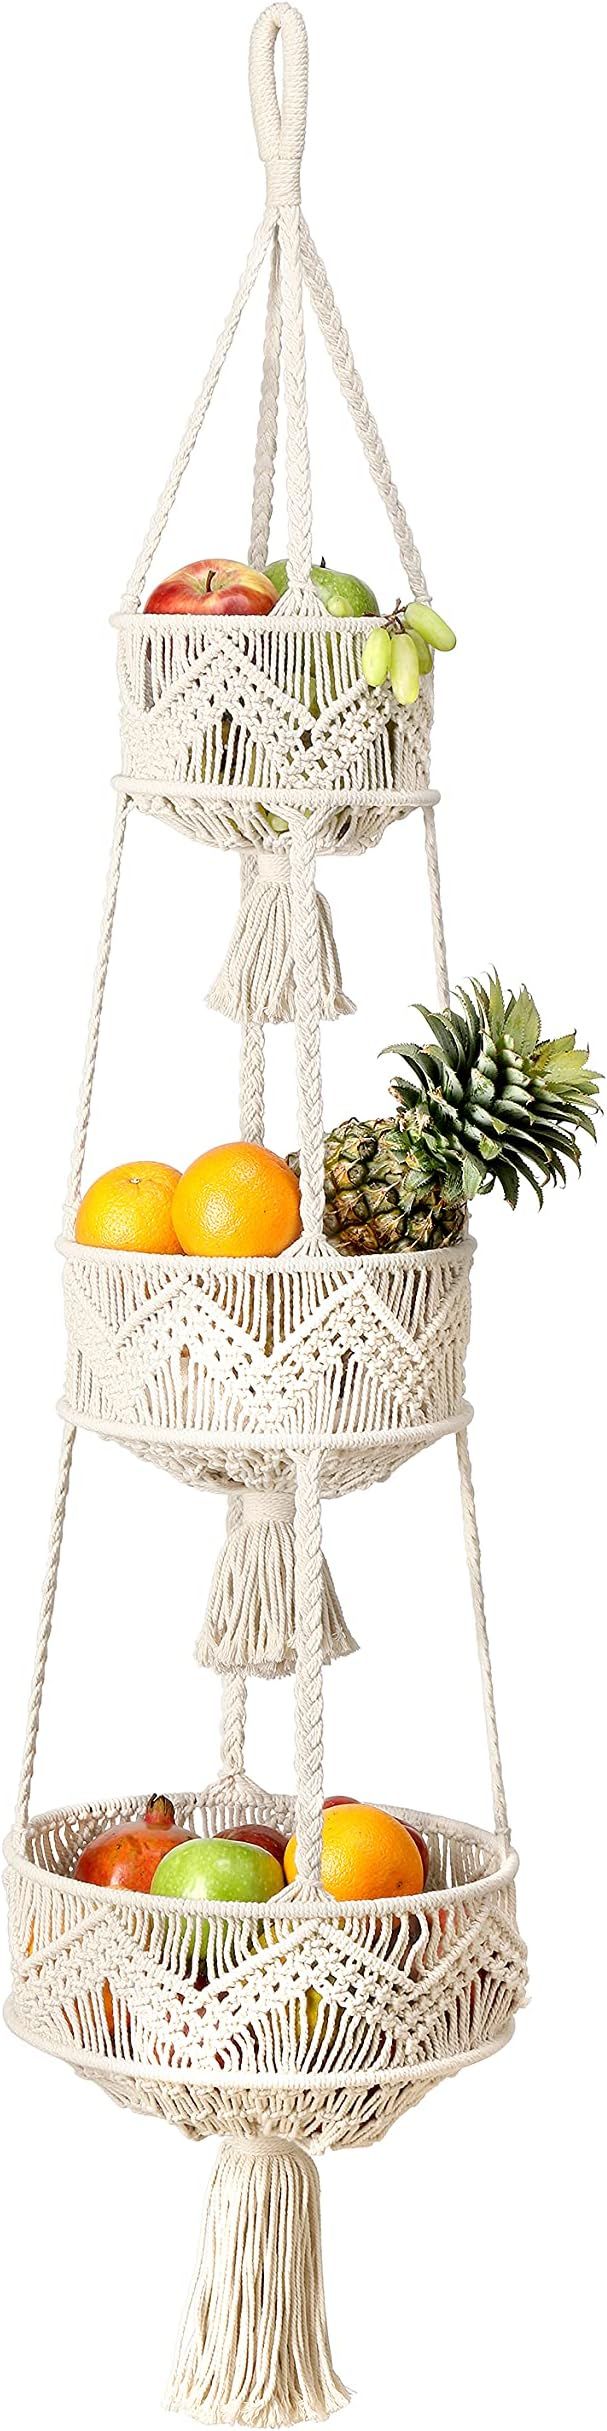 Folkulture 3 Tier Hanging Fruit Basket for Kitchen, Macrame Hanging Basket for Fruit and Vegetabl... | Amazon (US)